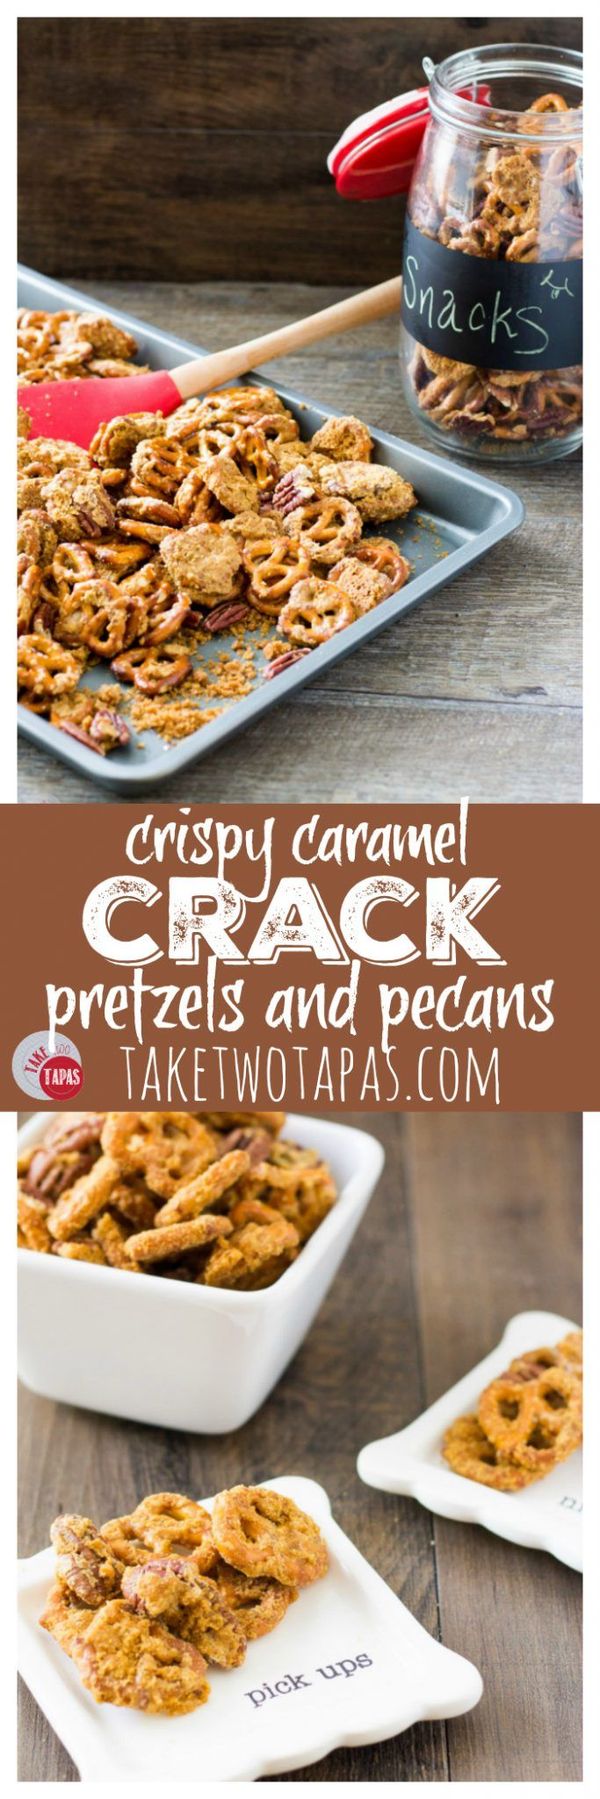 Crack Pretzels with Crispy Caramel and Pecans